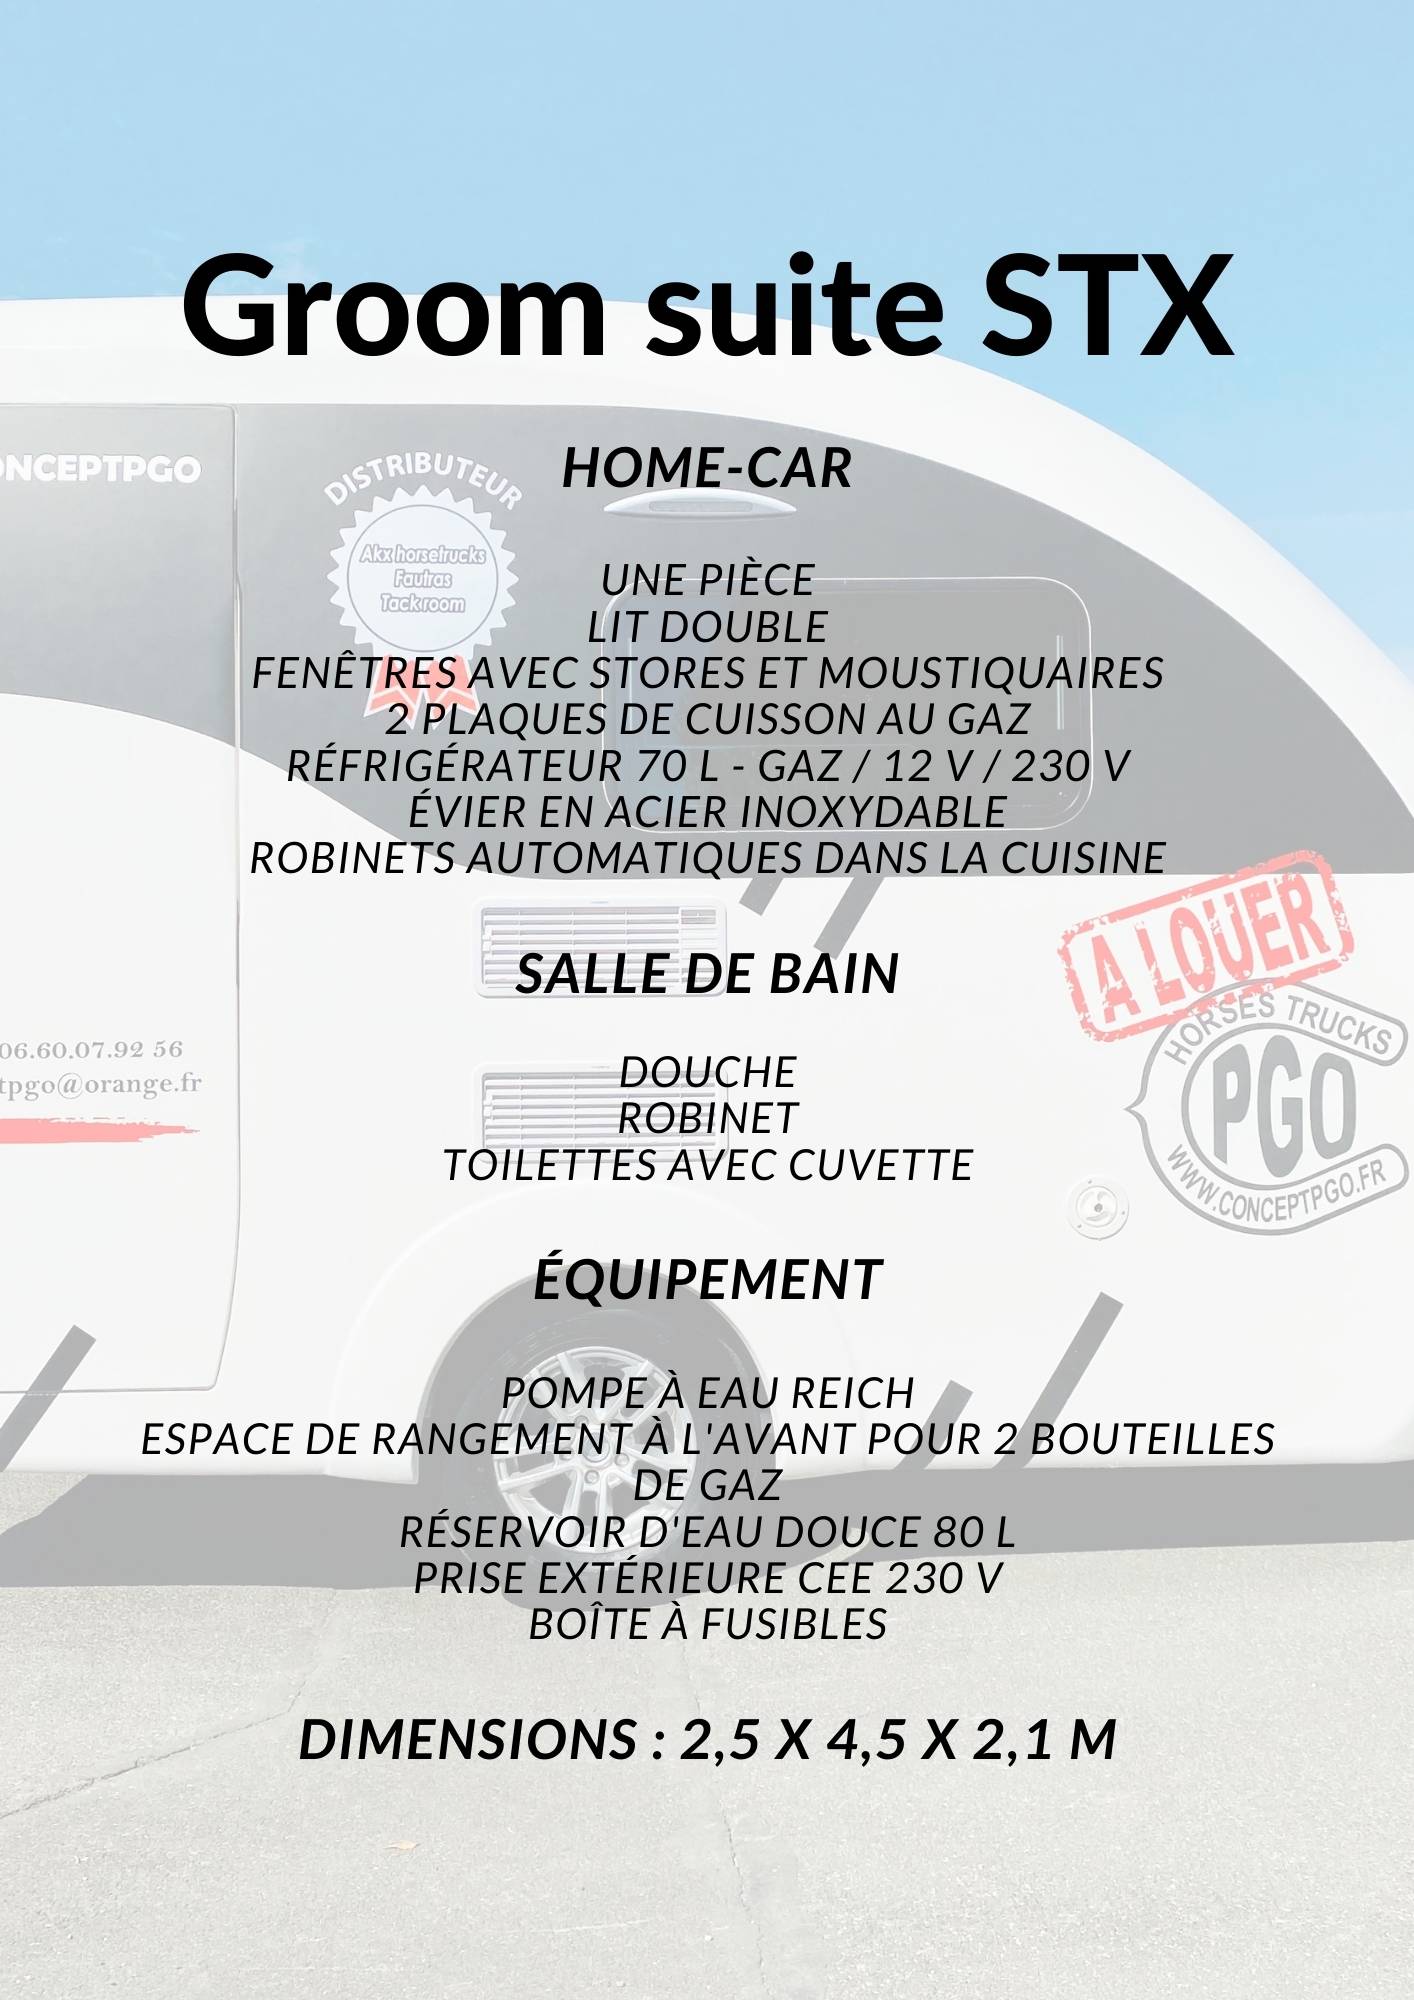 Location conceptpgo Groom suite STX description